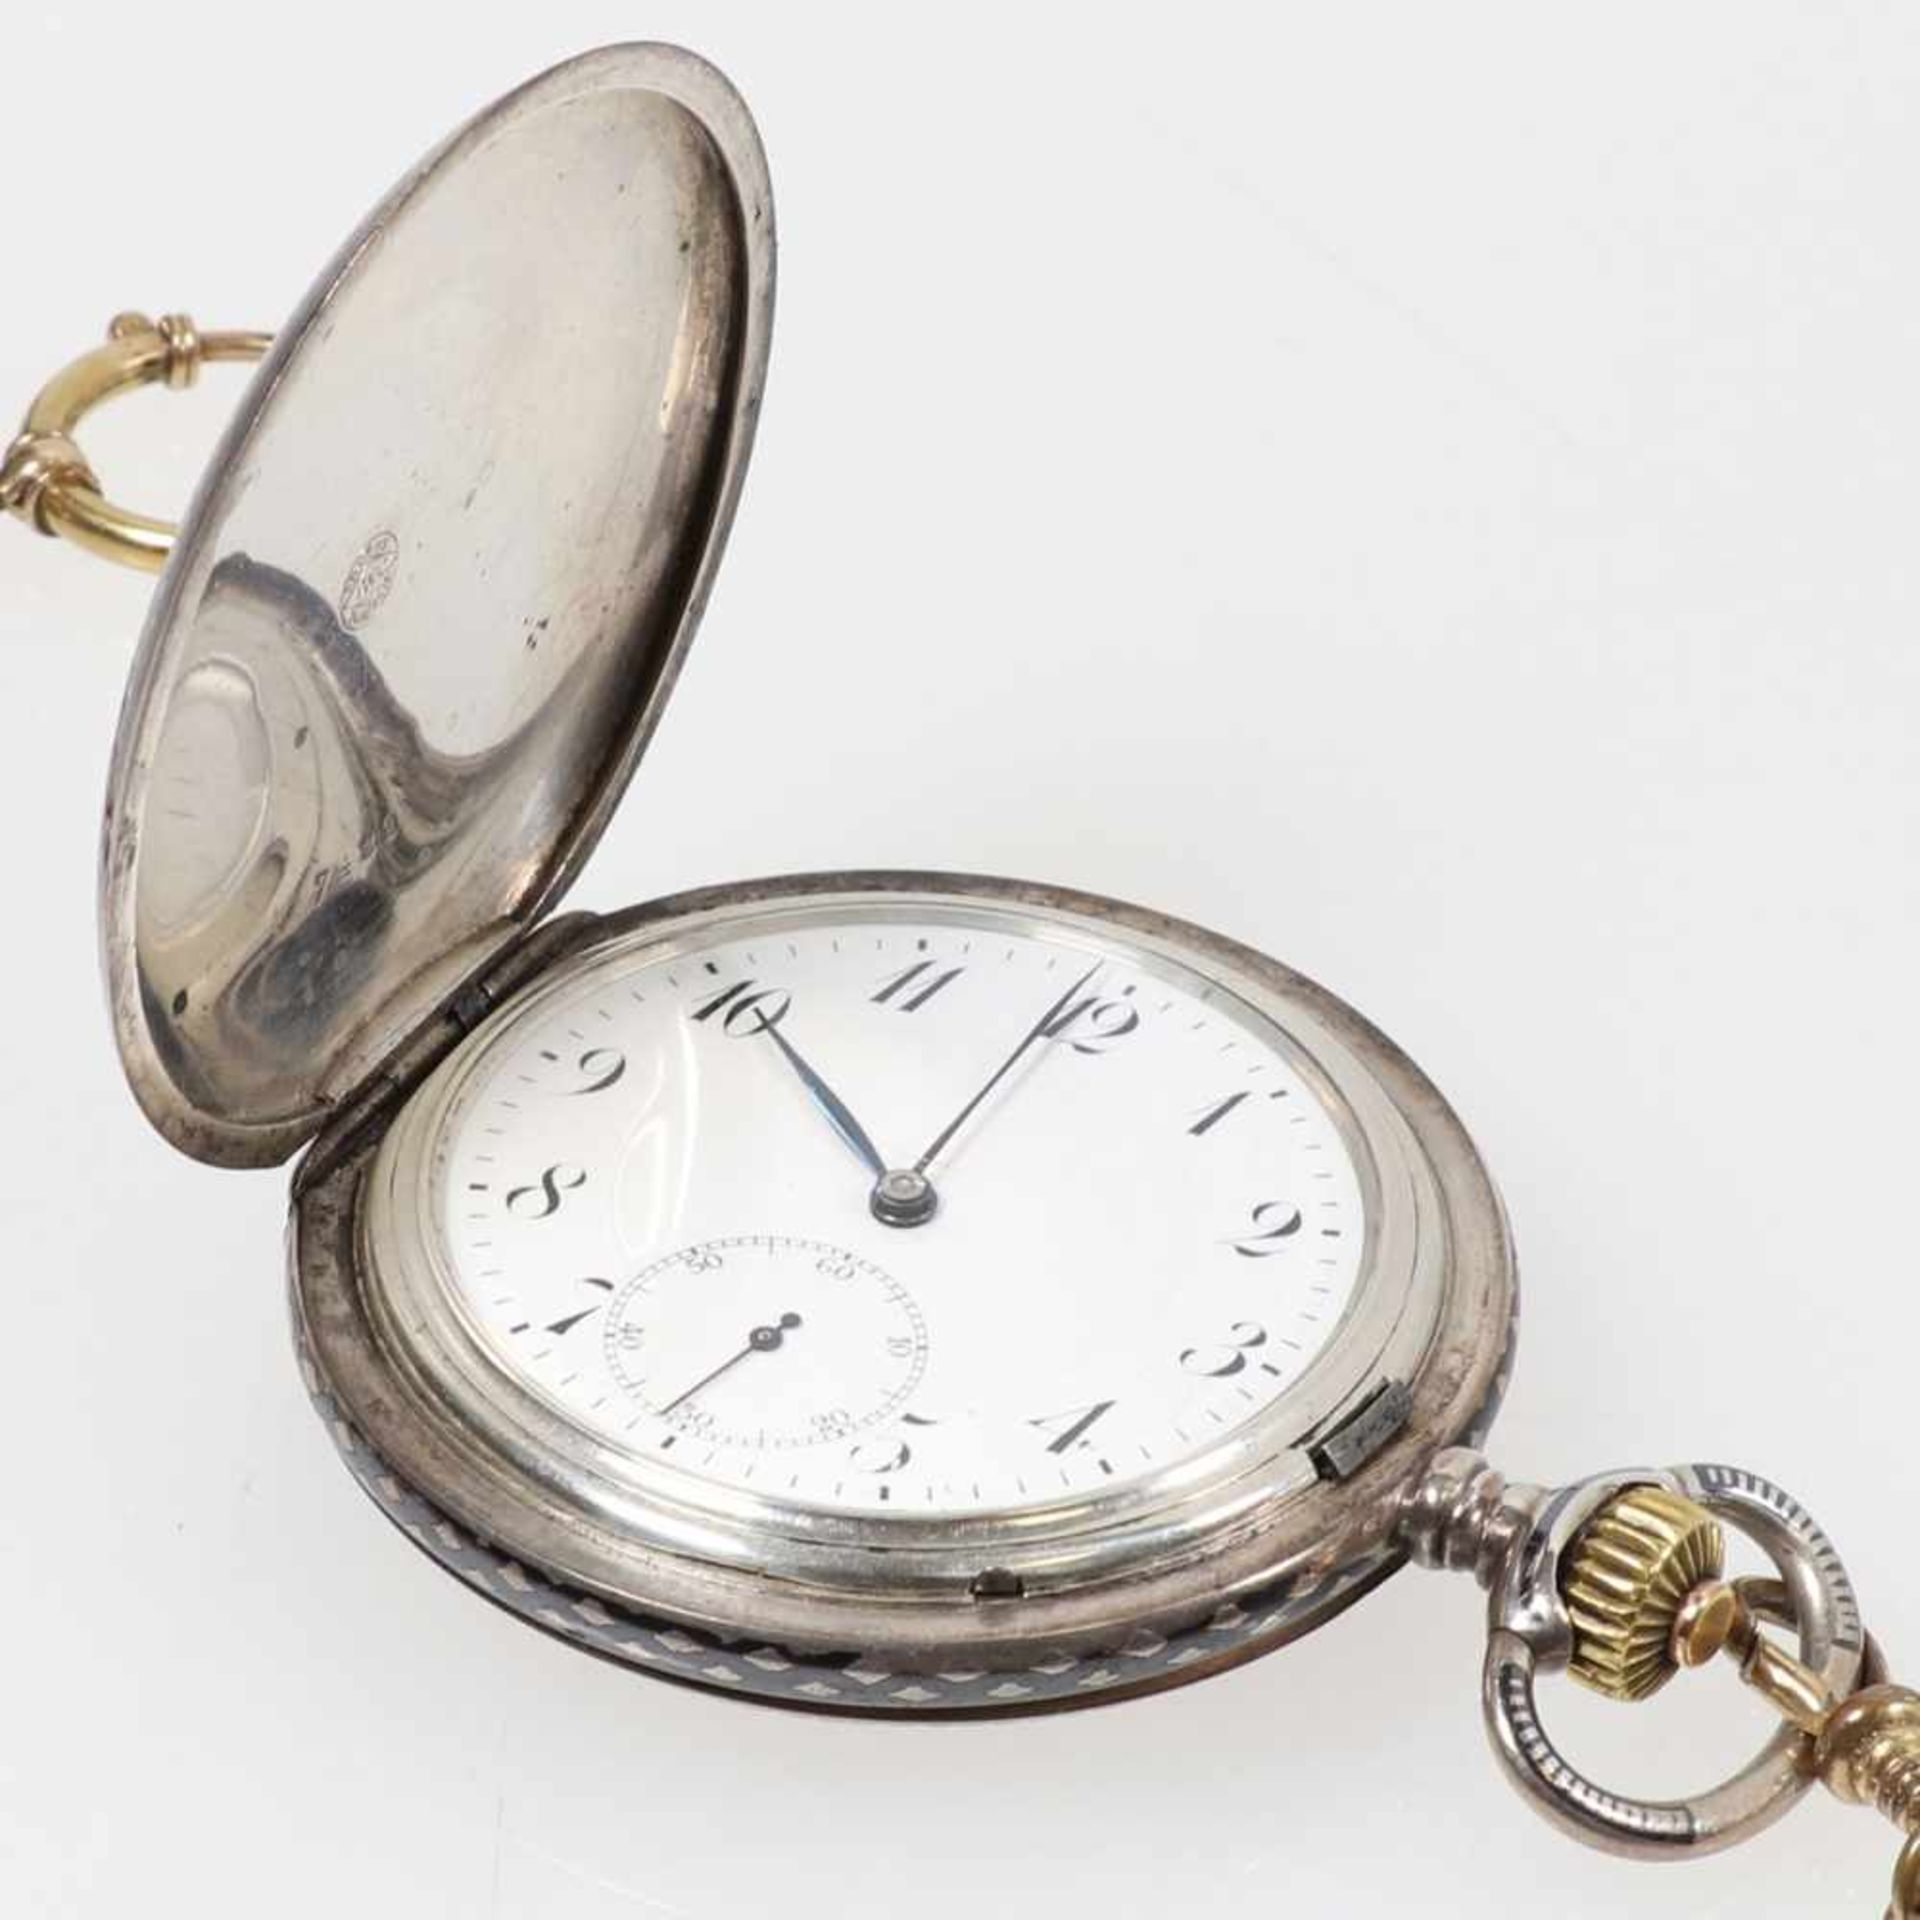 IWC-Savonnette in Silber in Niello-Technik mit Uhrenkette